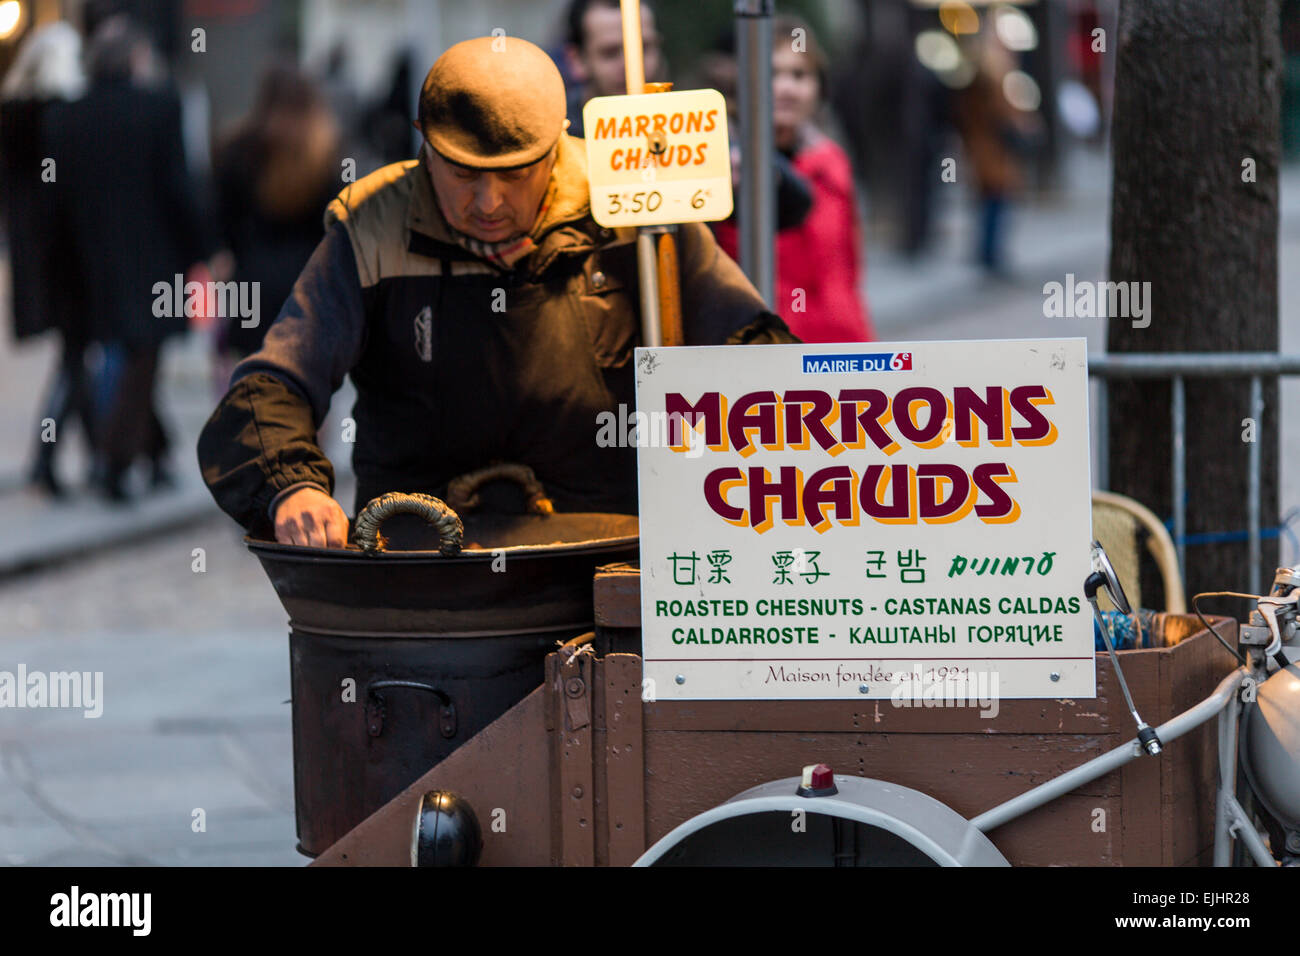 Vente homme marrons chauds dans la rue à Paris, France Banque D'Images